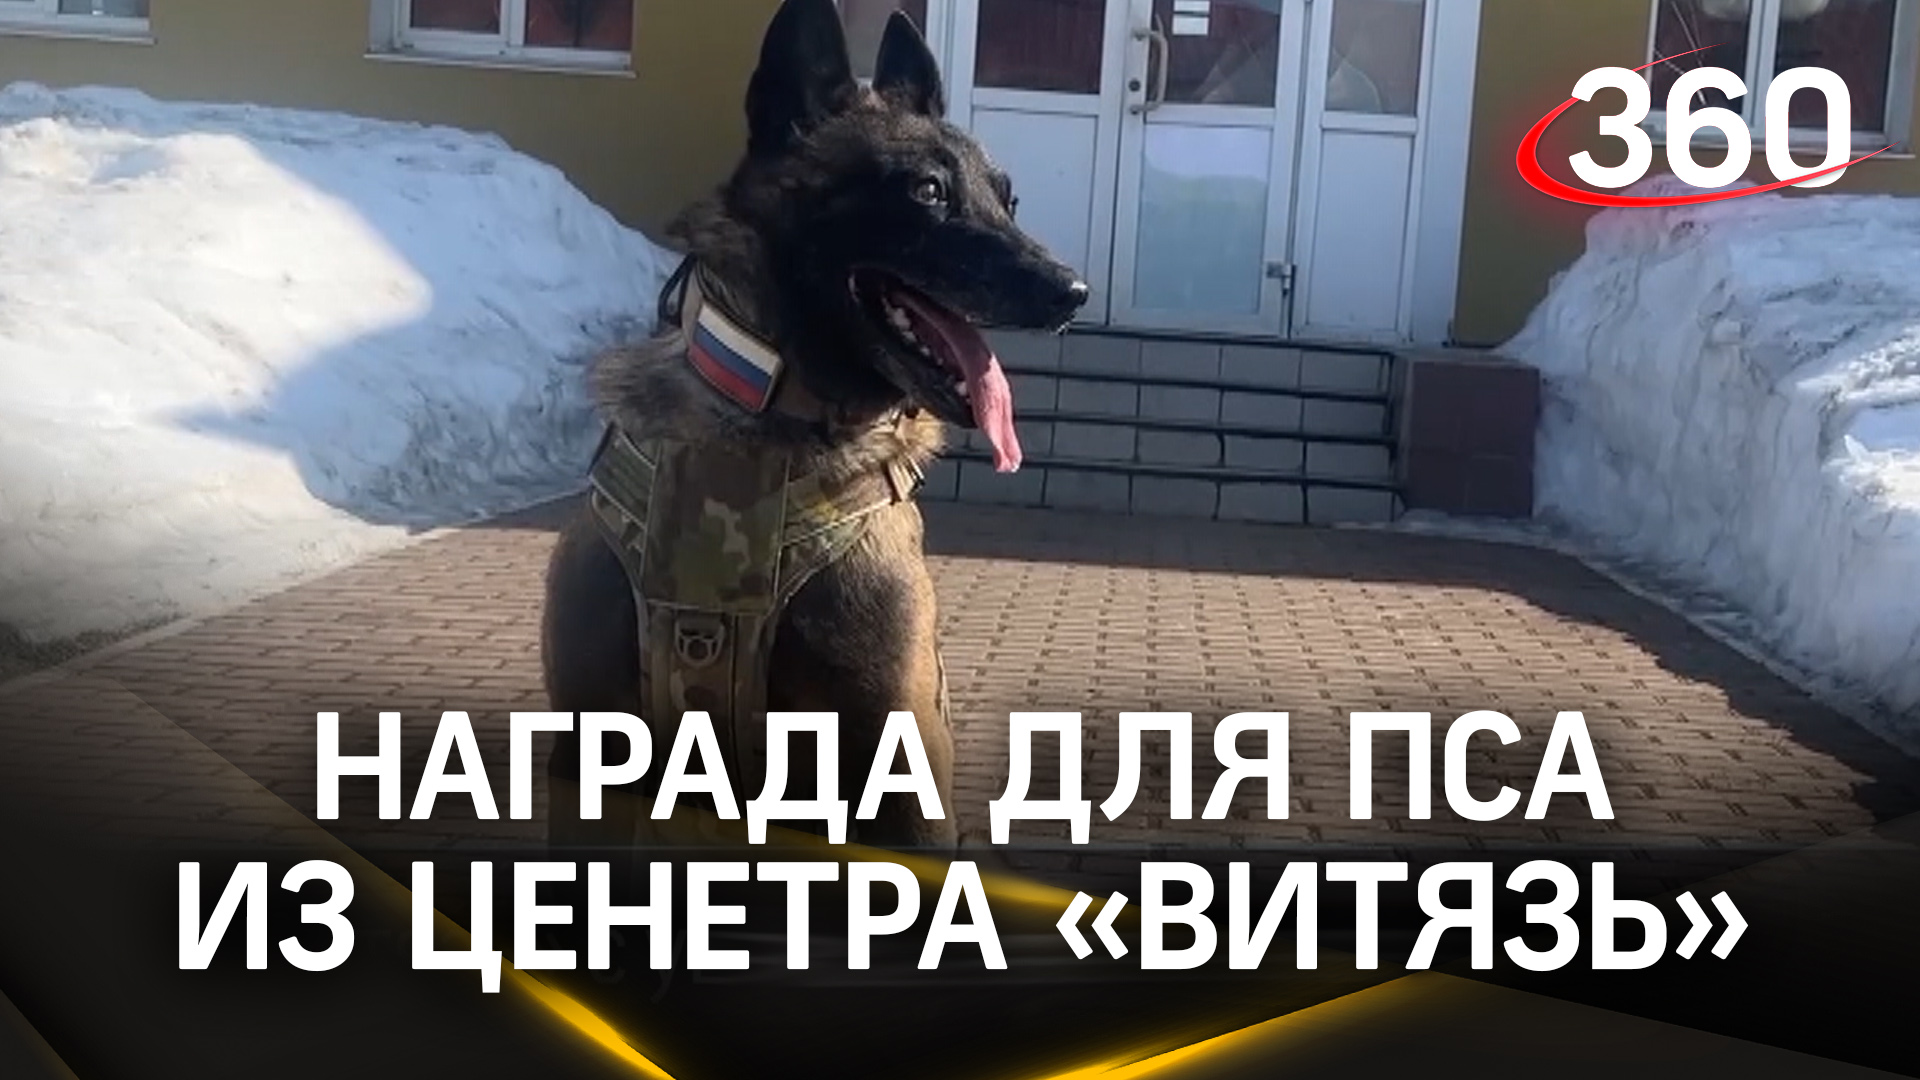 Медаль «Служебной собаке за службу в спецназе» вручили в Балашихе псу Жиксеру при выходе на пенсию